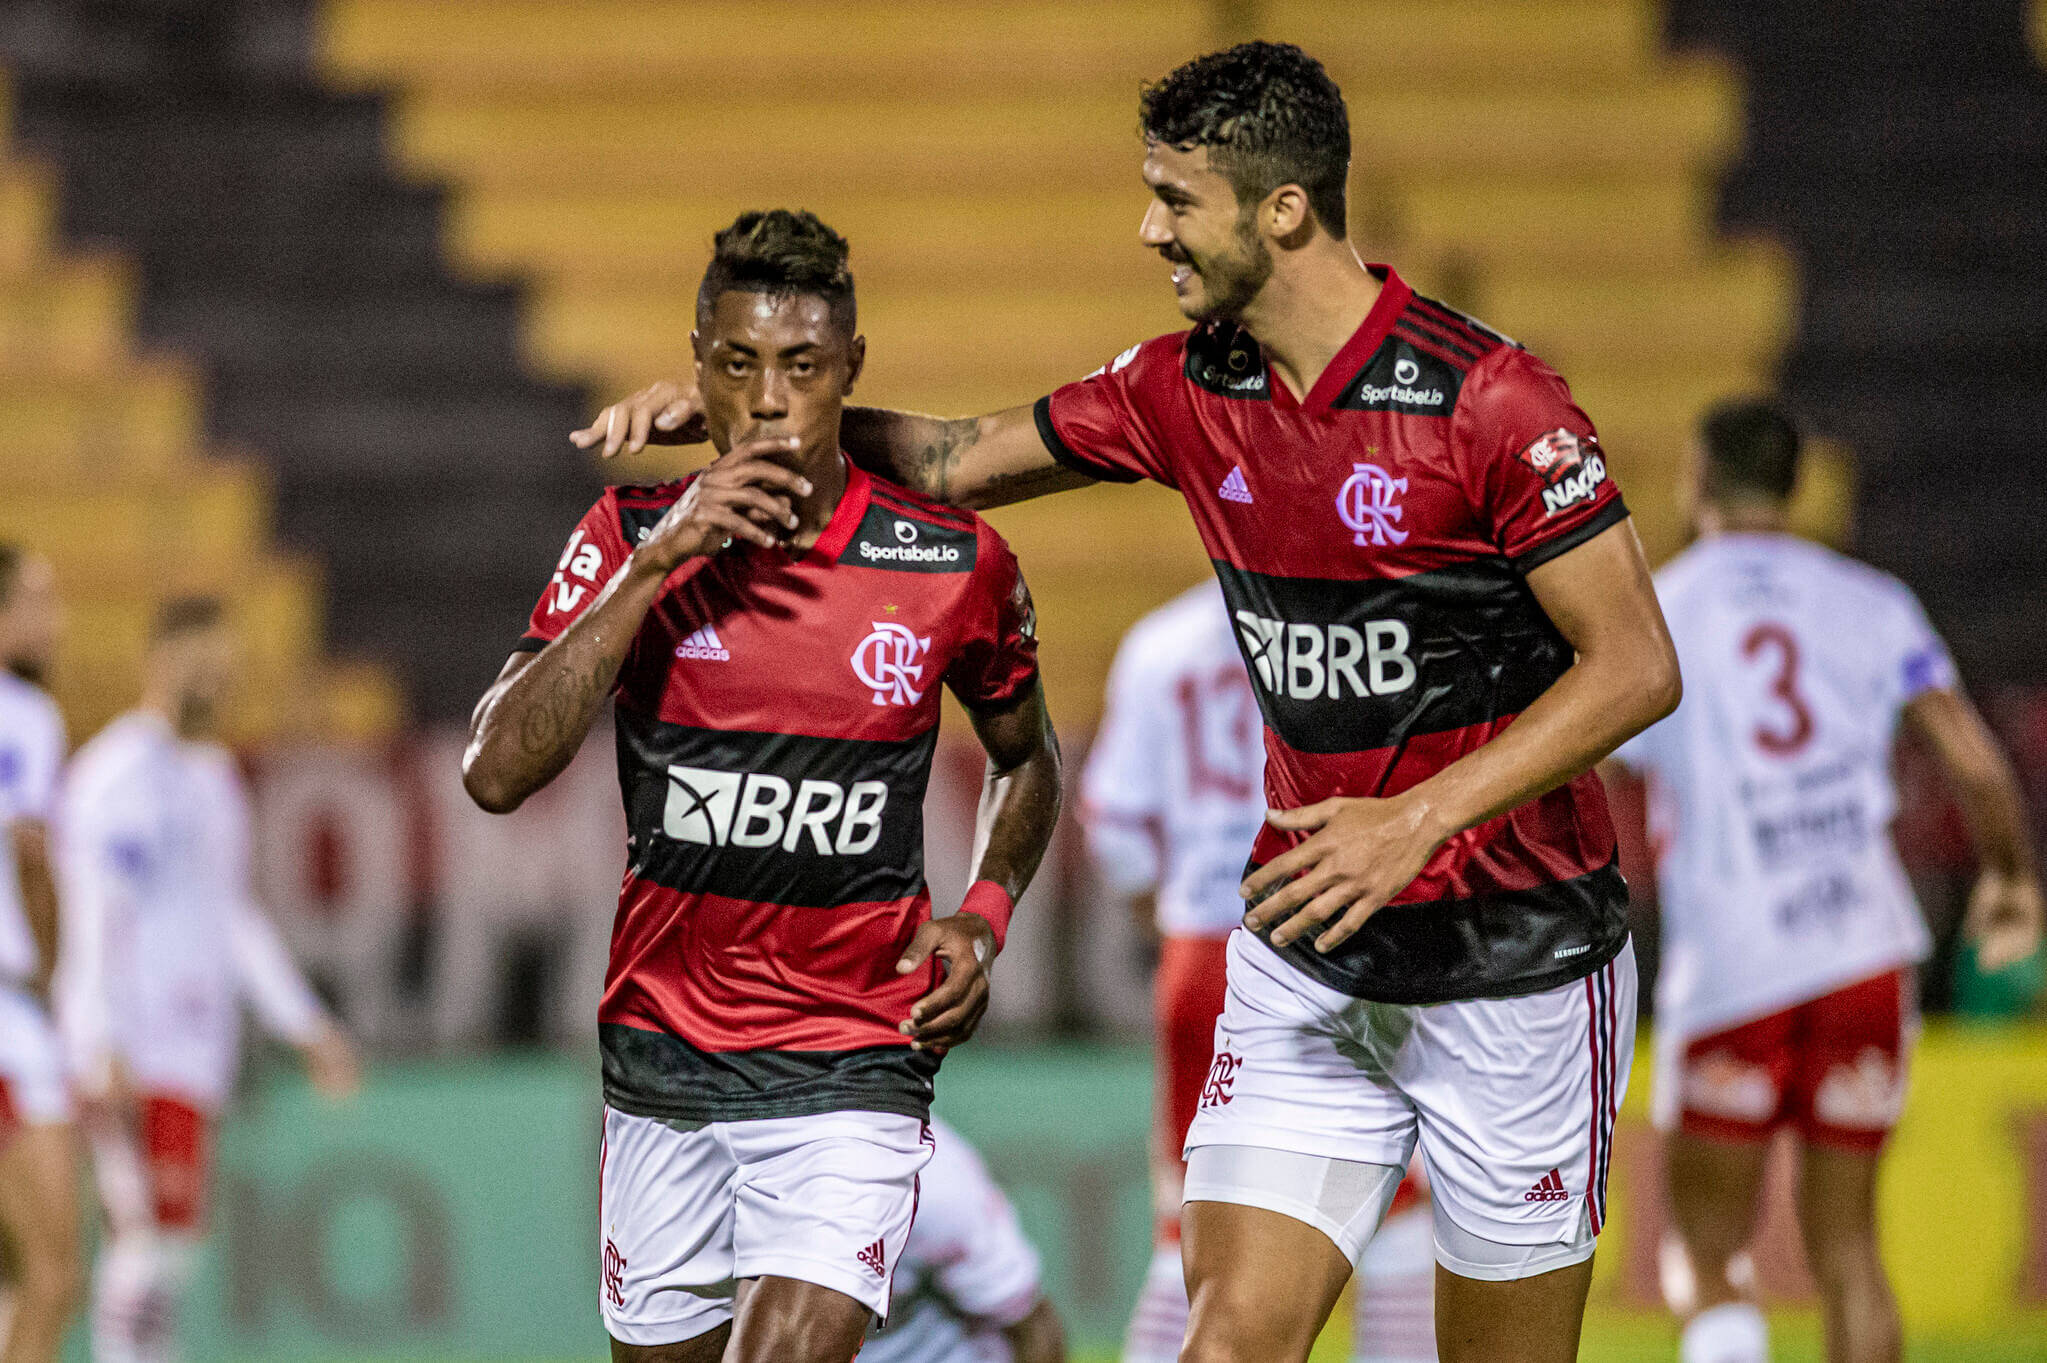 Foto: Marcelo Cortes / Flamengo